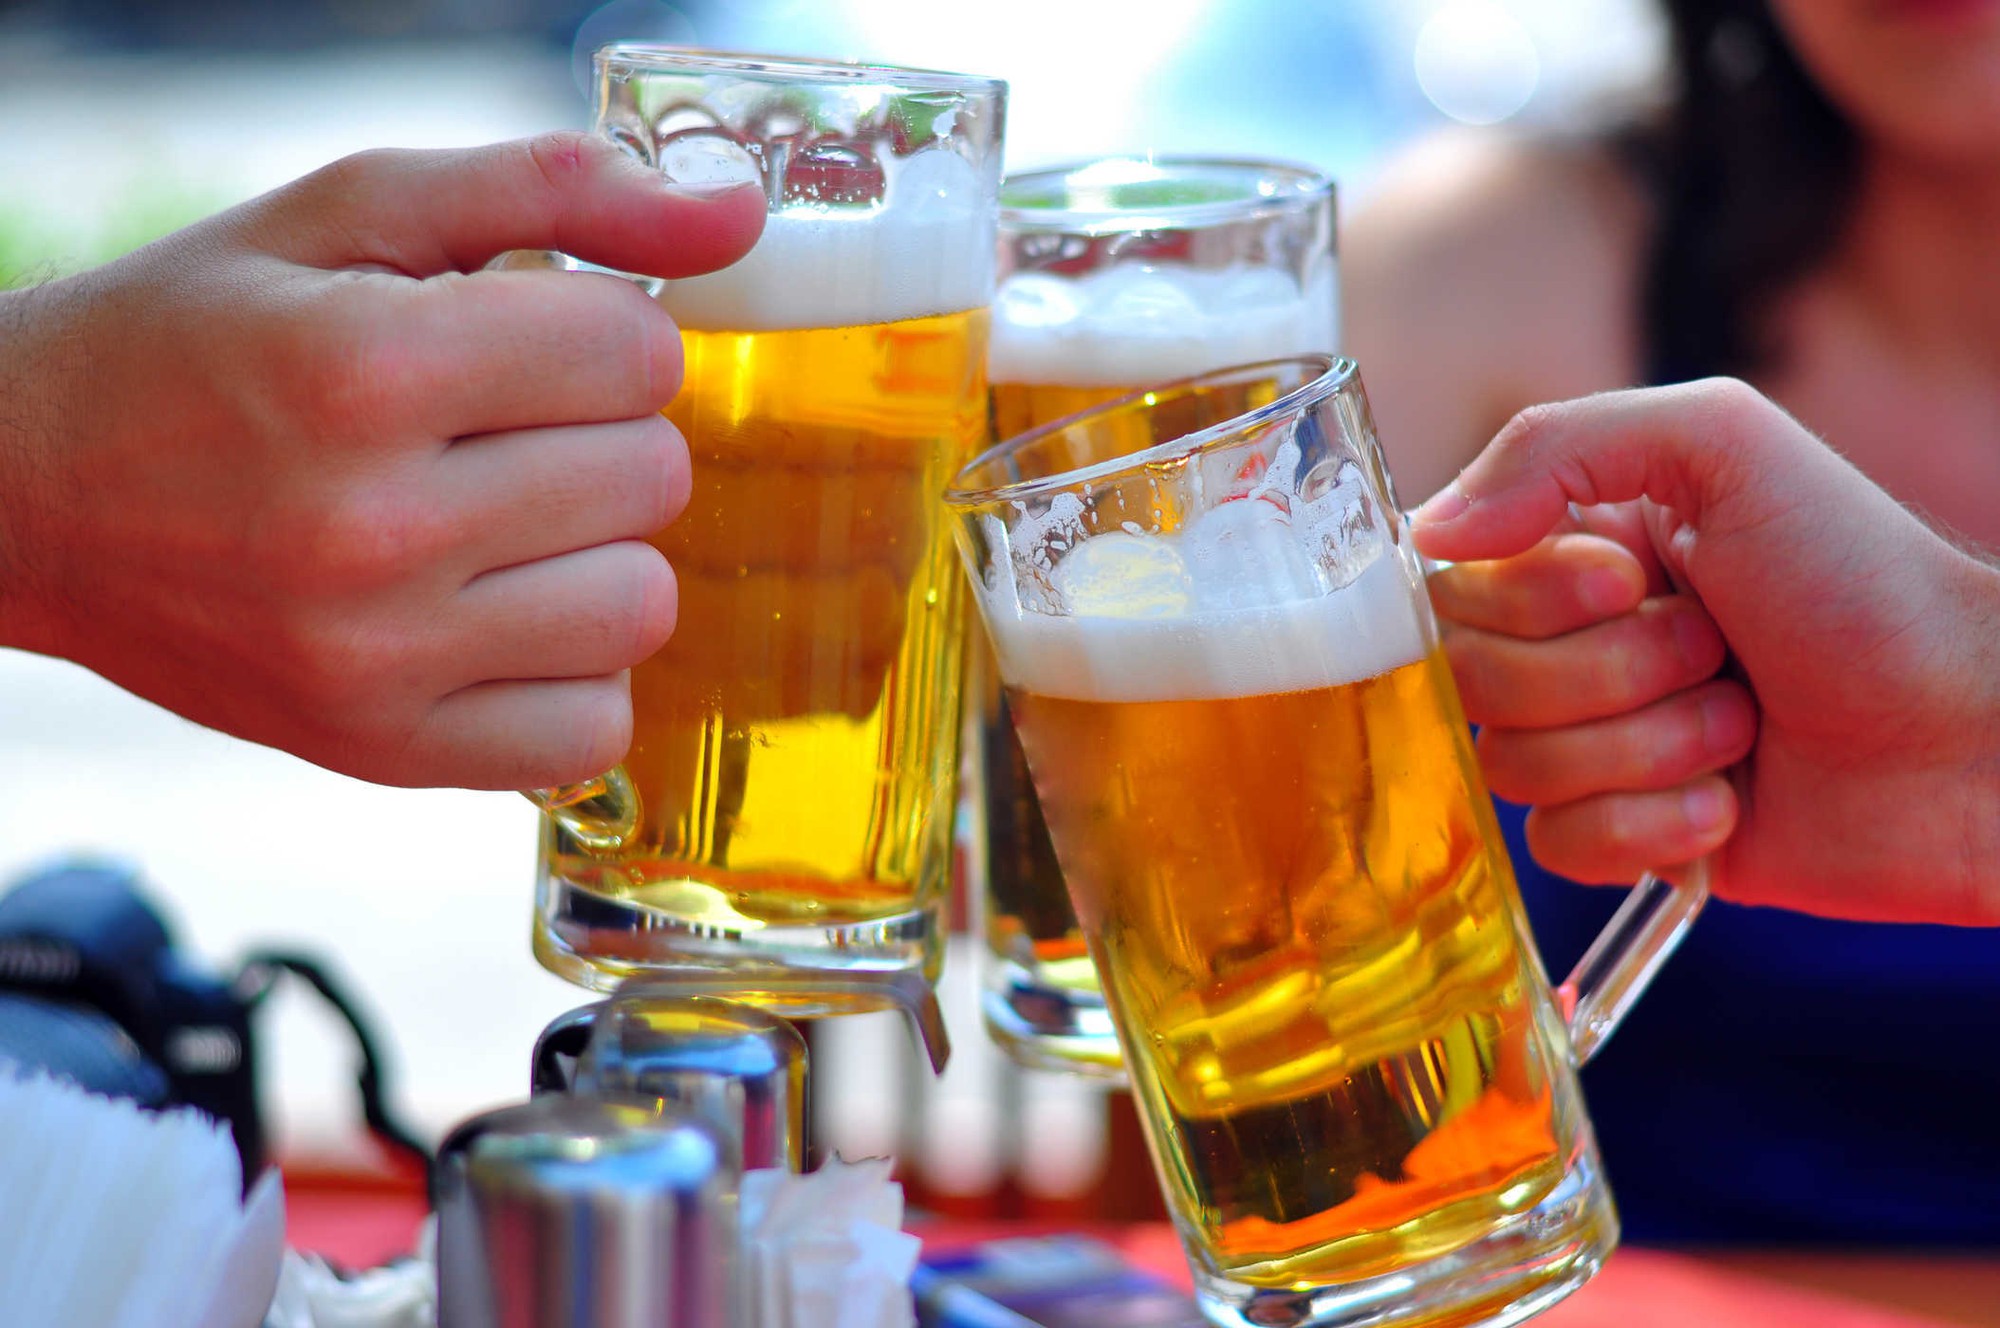 Bia “mát” hơn rượu: Chuyên gia WHO nói gì? - Báo Người lao động